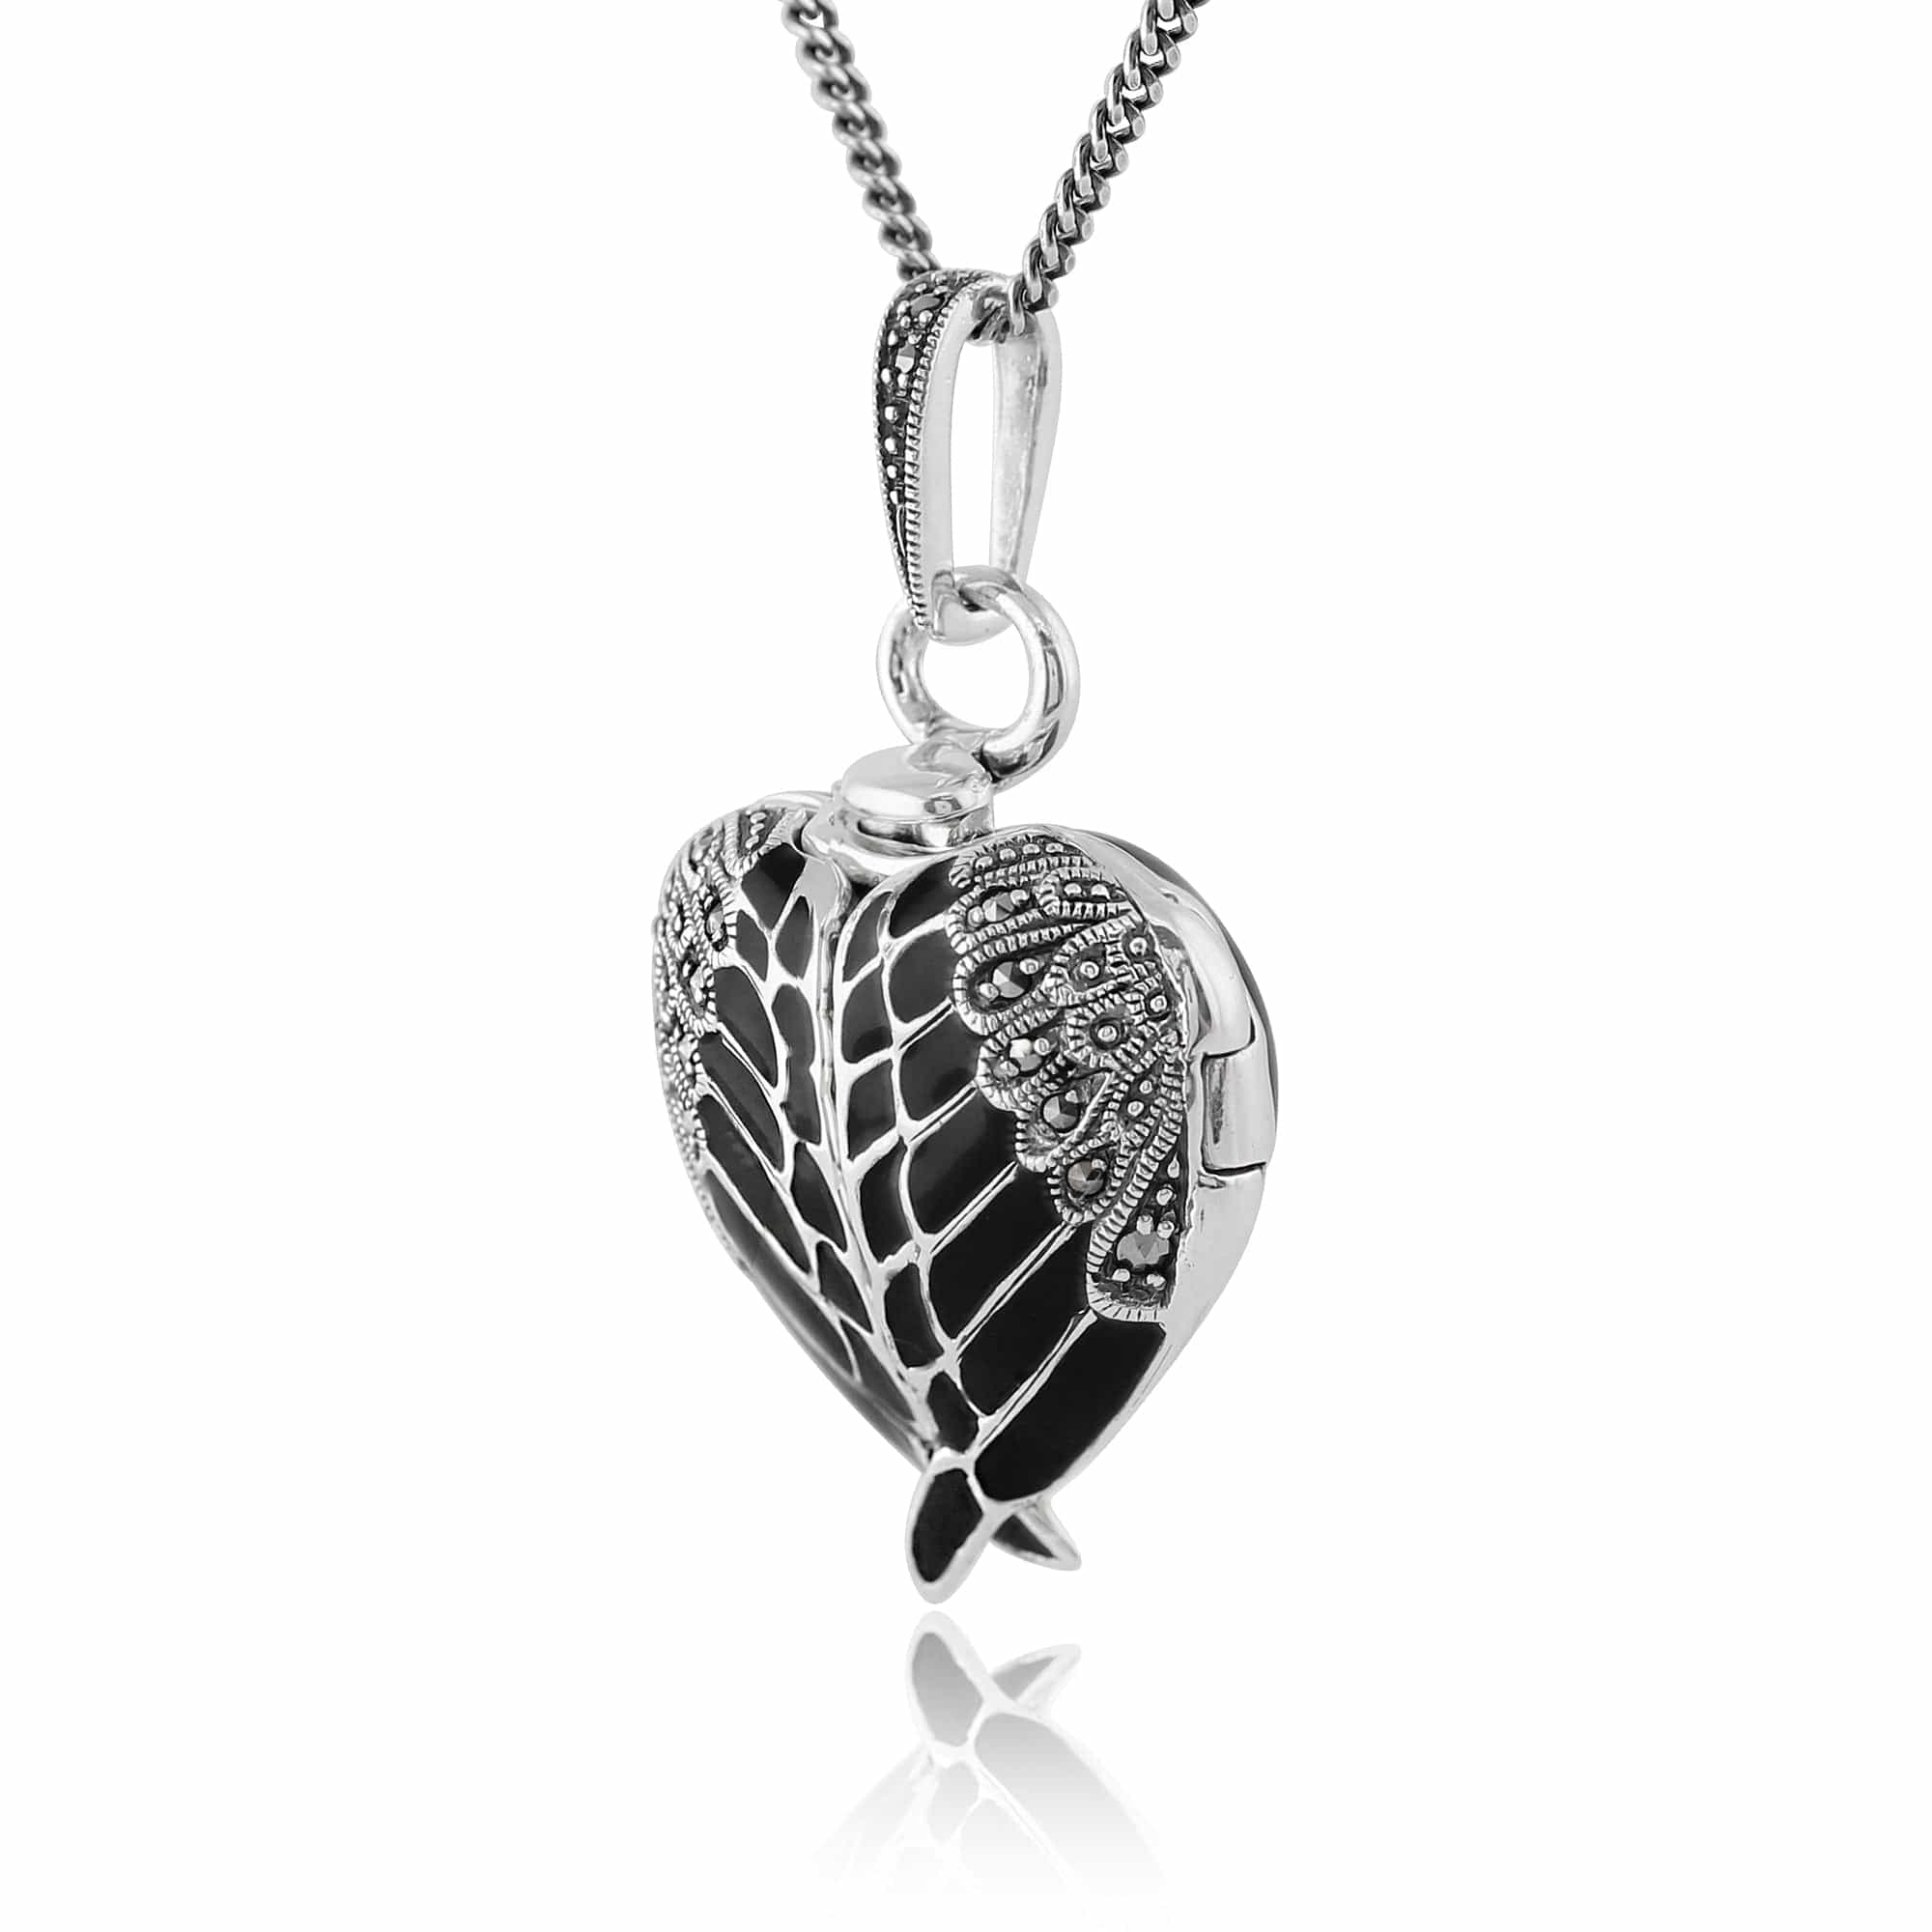 Art Nouveau Style Round Marcasite & Black Enamel Angel Wing Heart Locket on Chain in 925 Sterling Silver - Gemondo